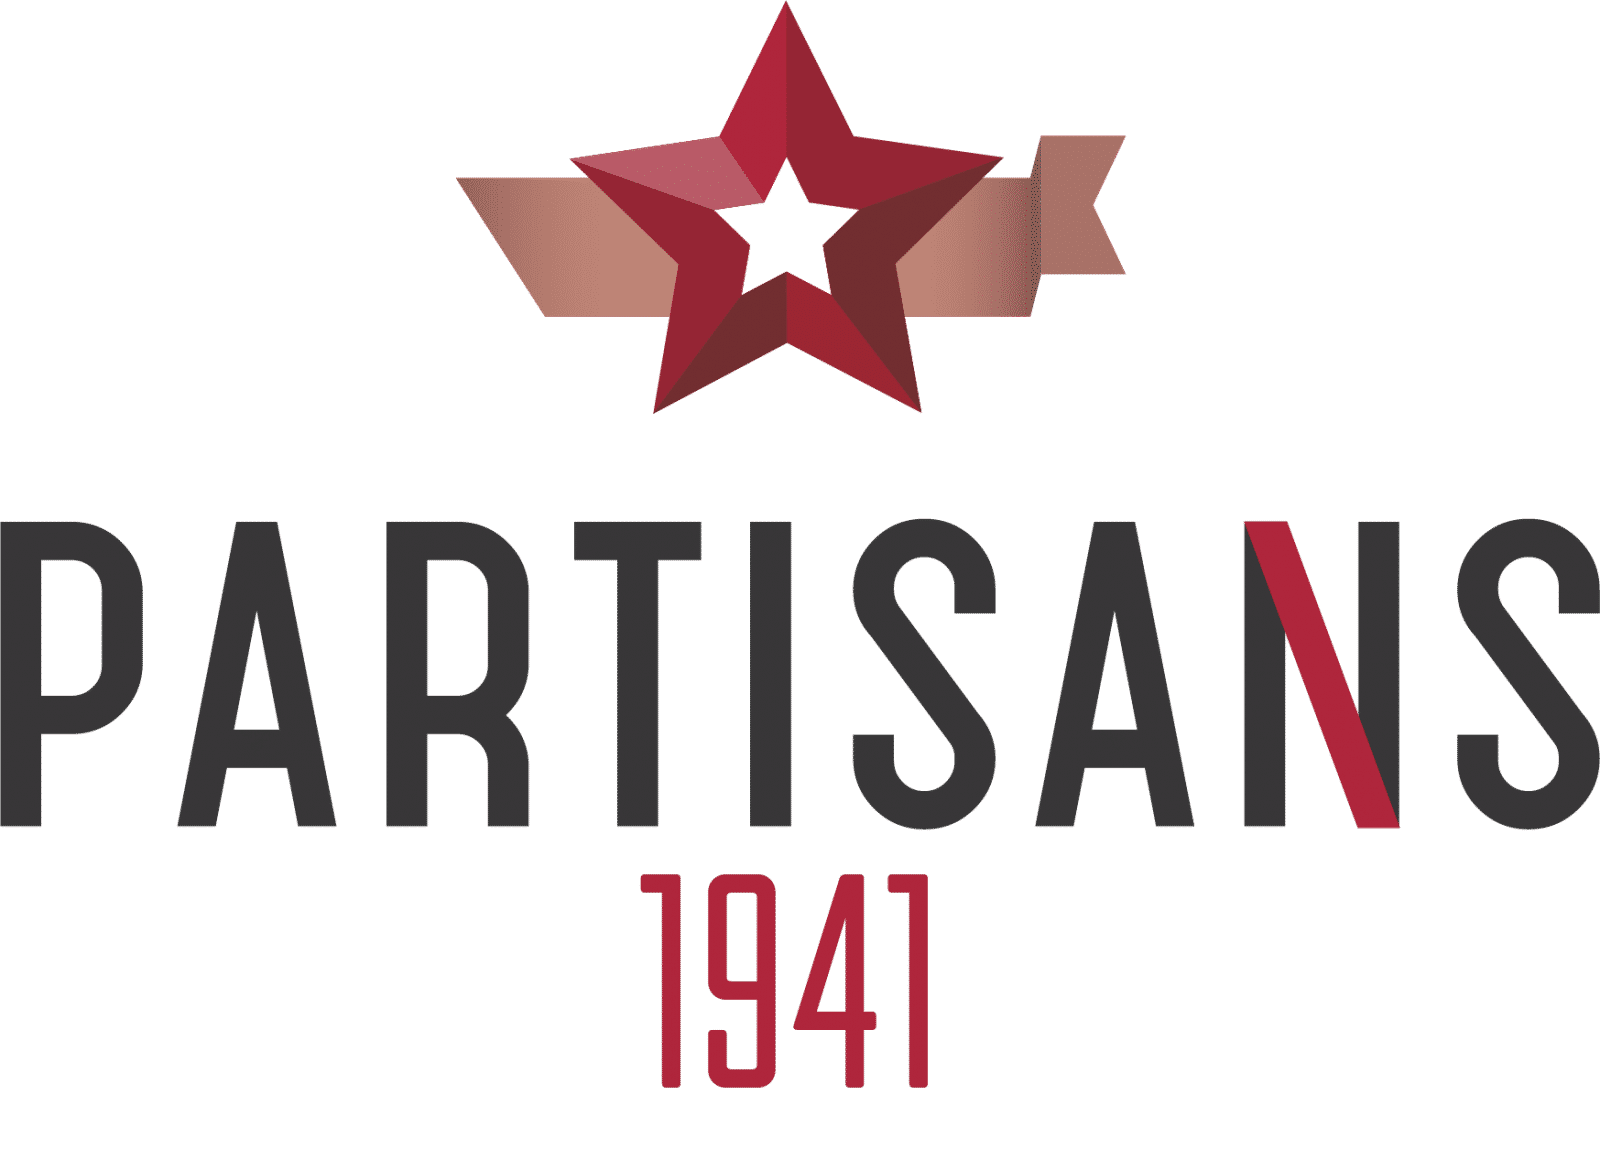 partisans 1941 logo